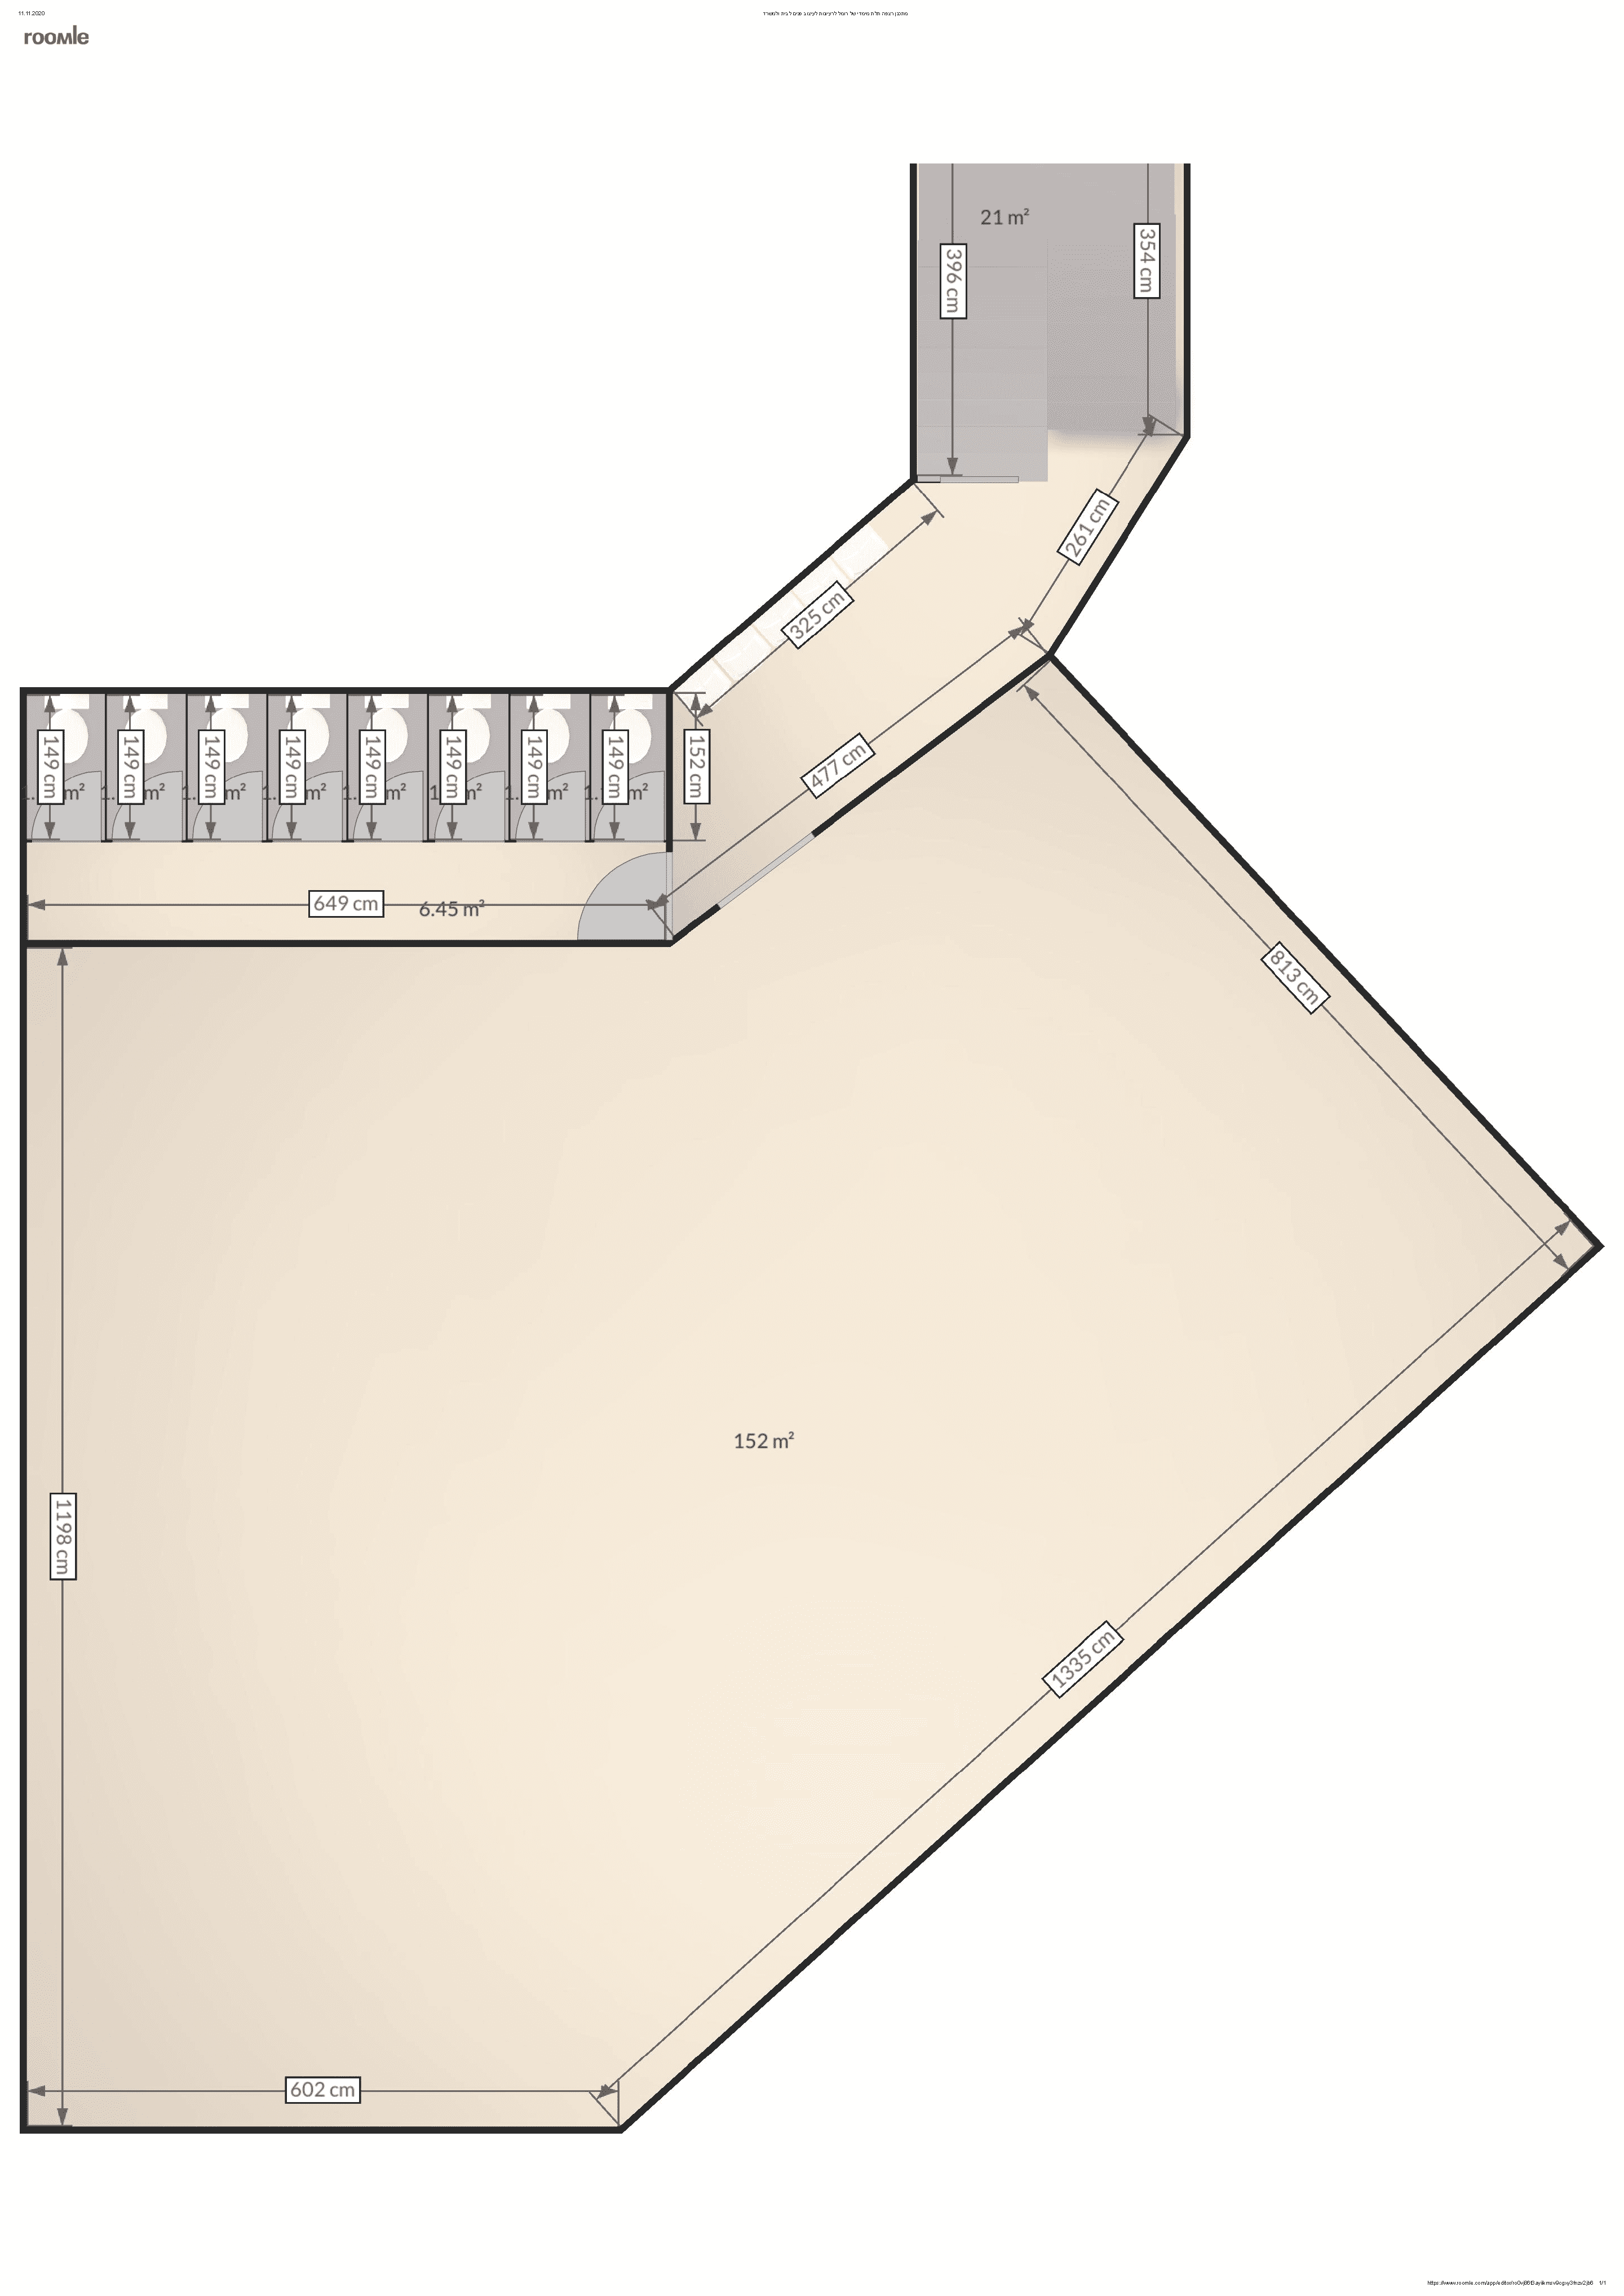 מתכנן רצפה תלת מימדי של רומל לרעיונות לעיצוב פנים לבית ולמשרד.png